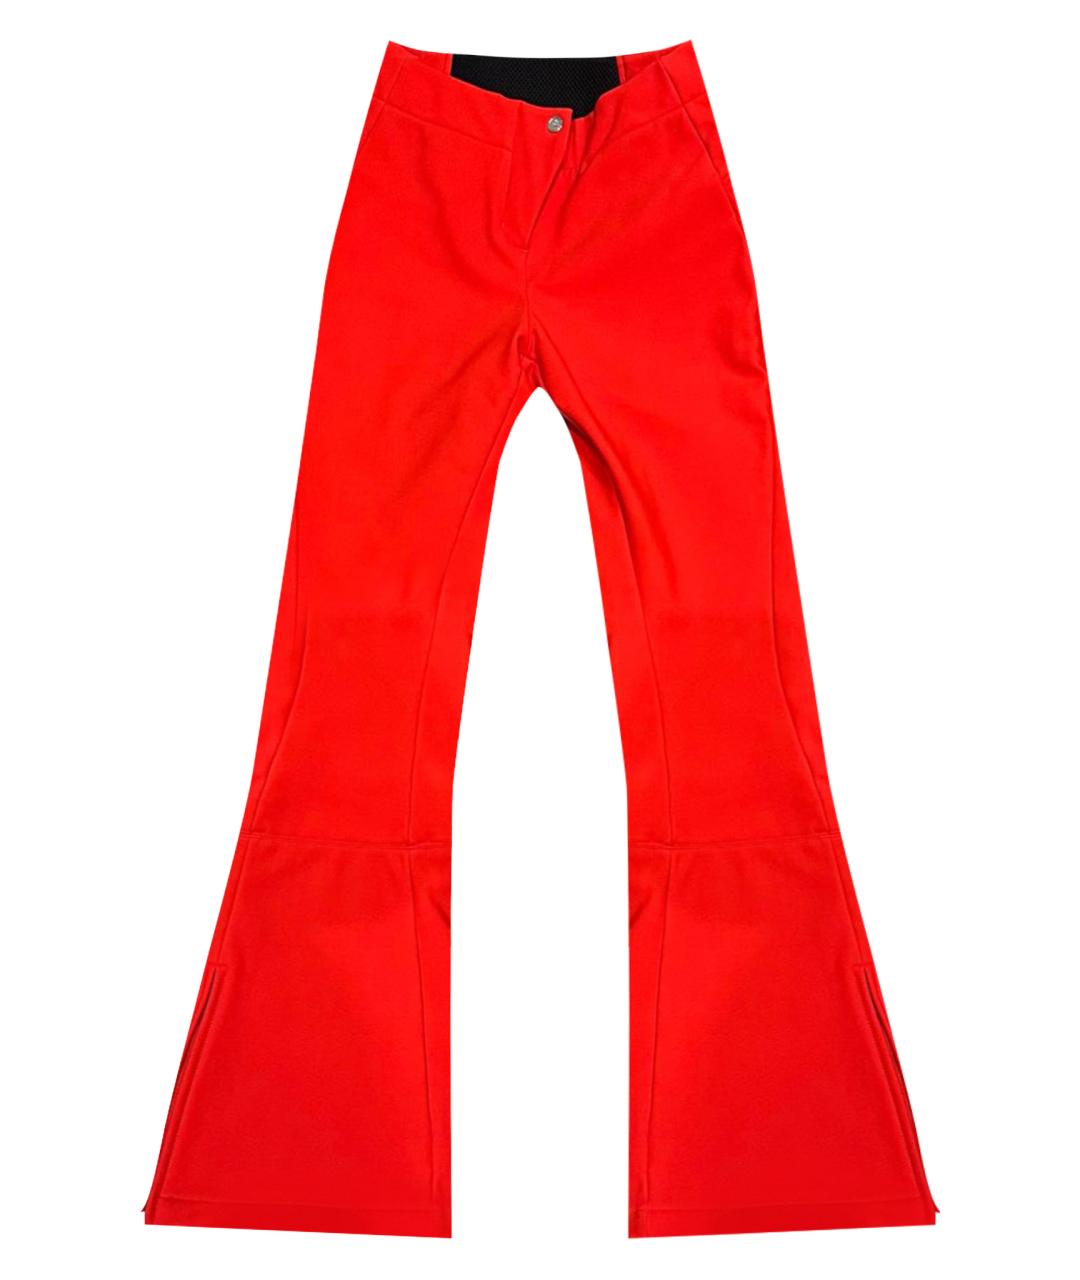 FUSALP Красные полиэстеровые спортивные брюки и шорты, фото 1